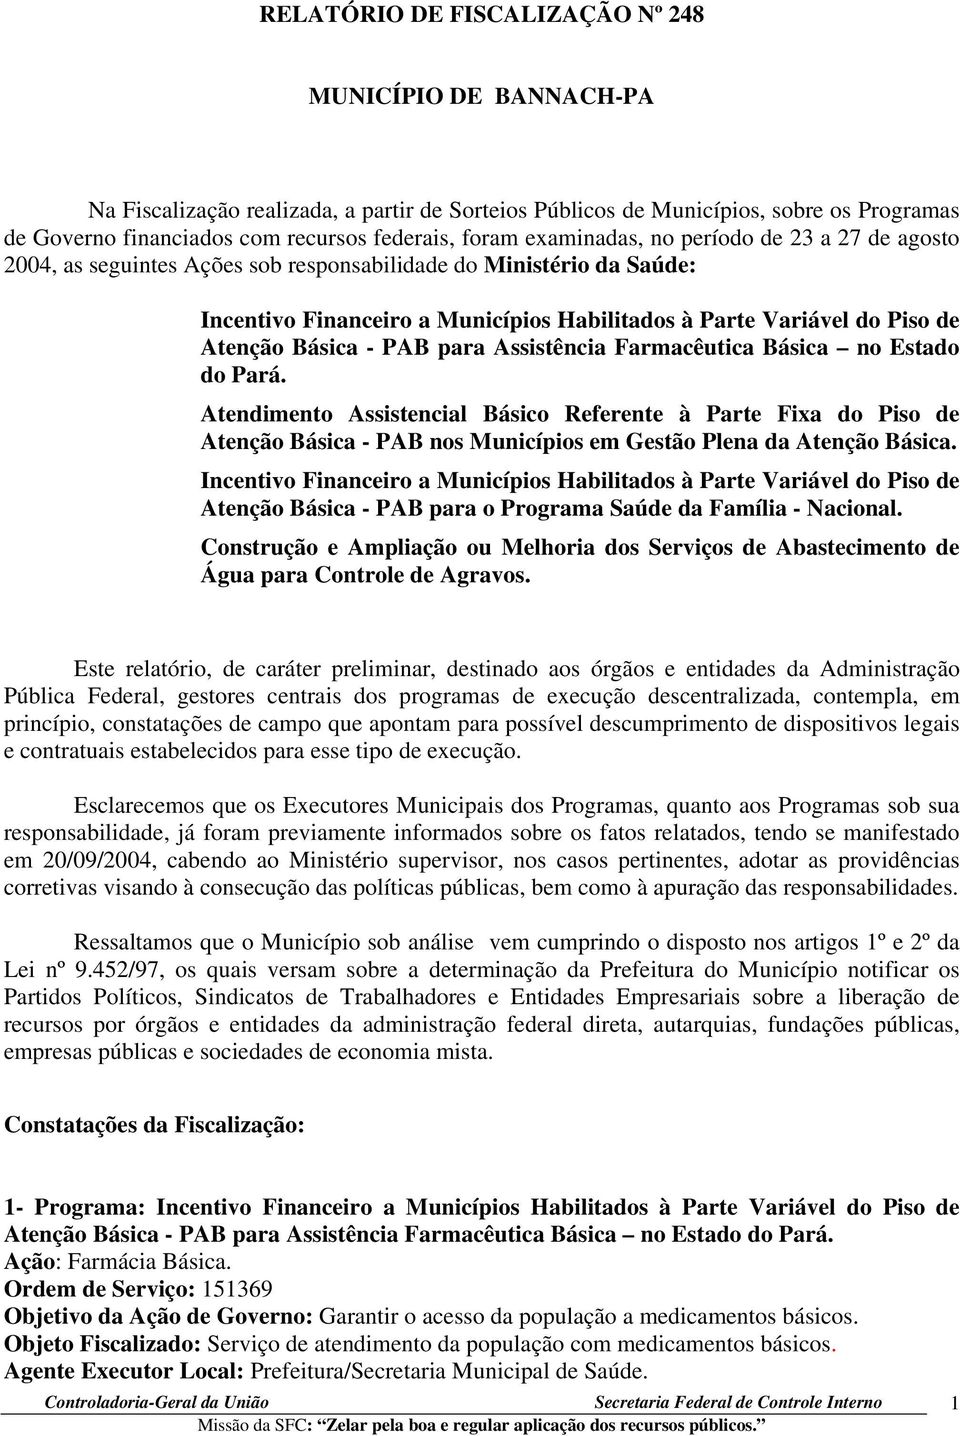 Básica - PAB para Assistência Farmacêutica Básica no Estado do Pará.